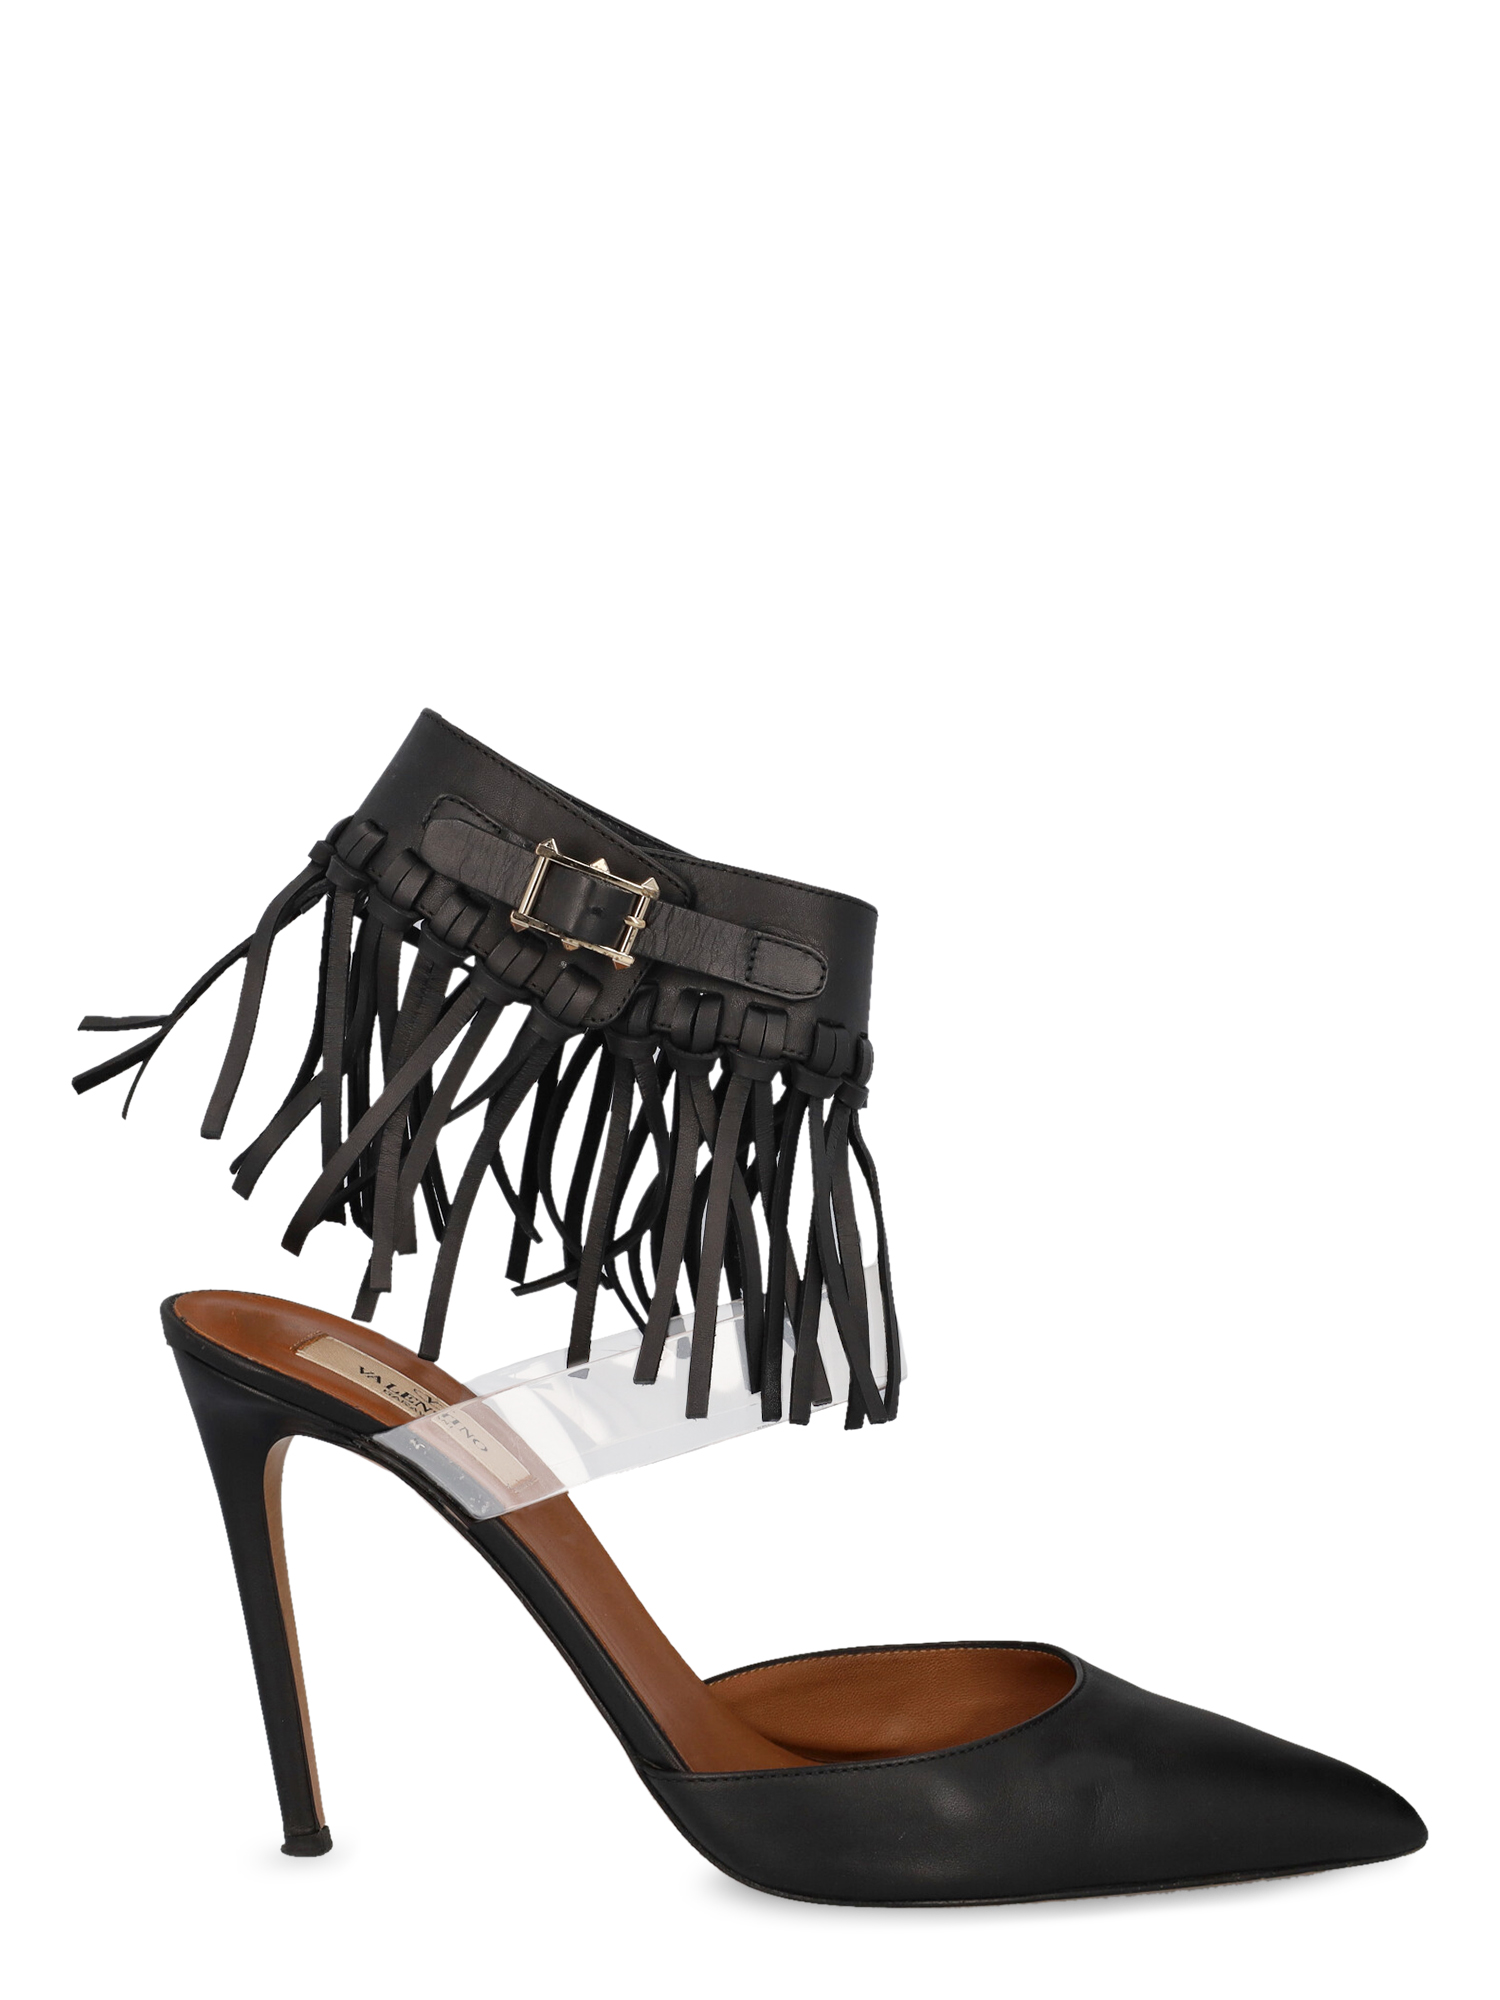 Escarpins Pour Femme - Valentino - En Leather Black - Taille: IT 40 - EU 40